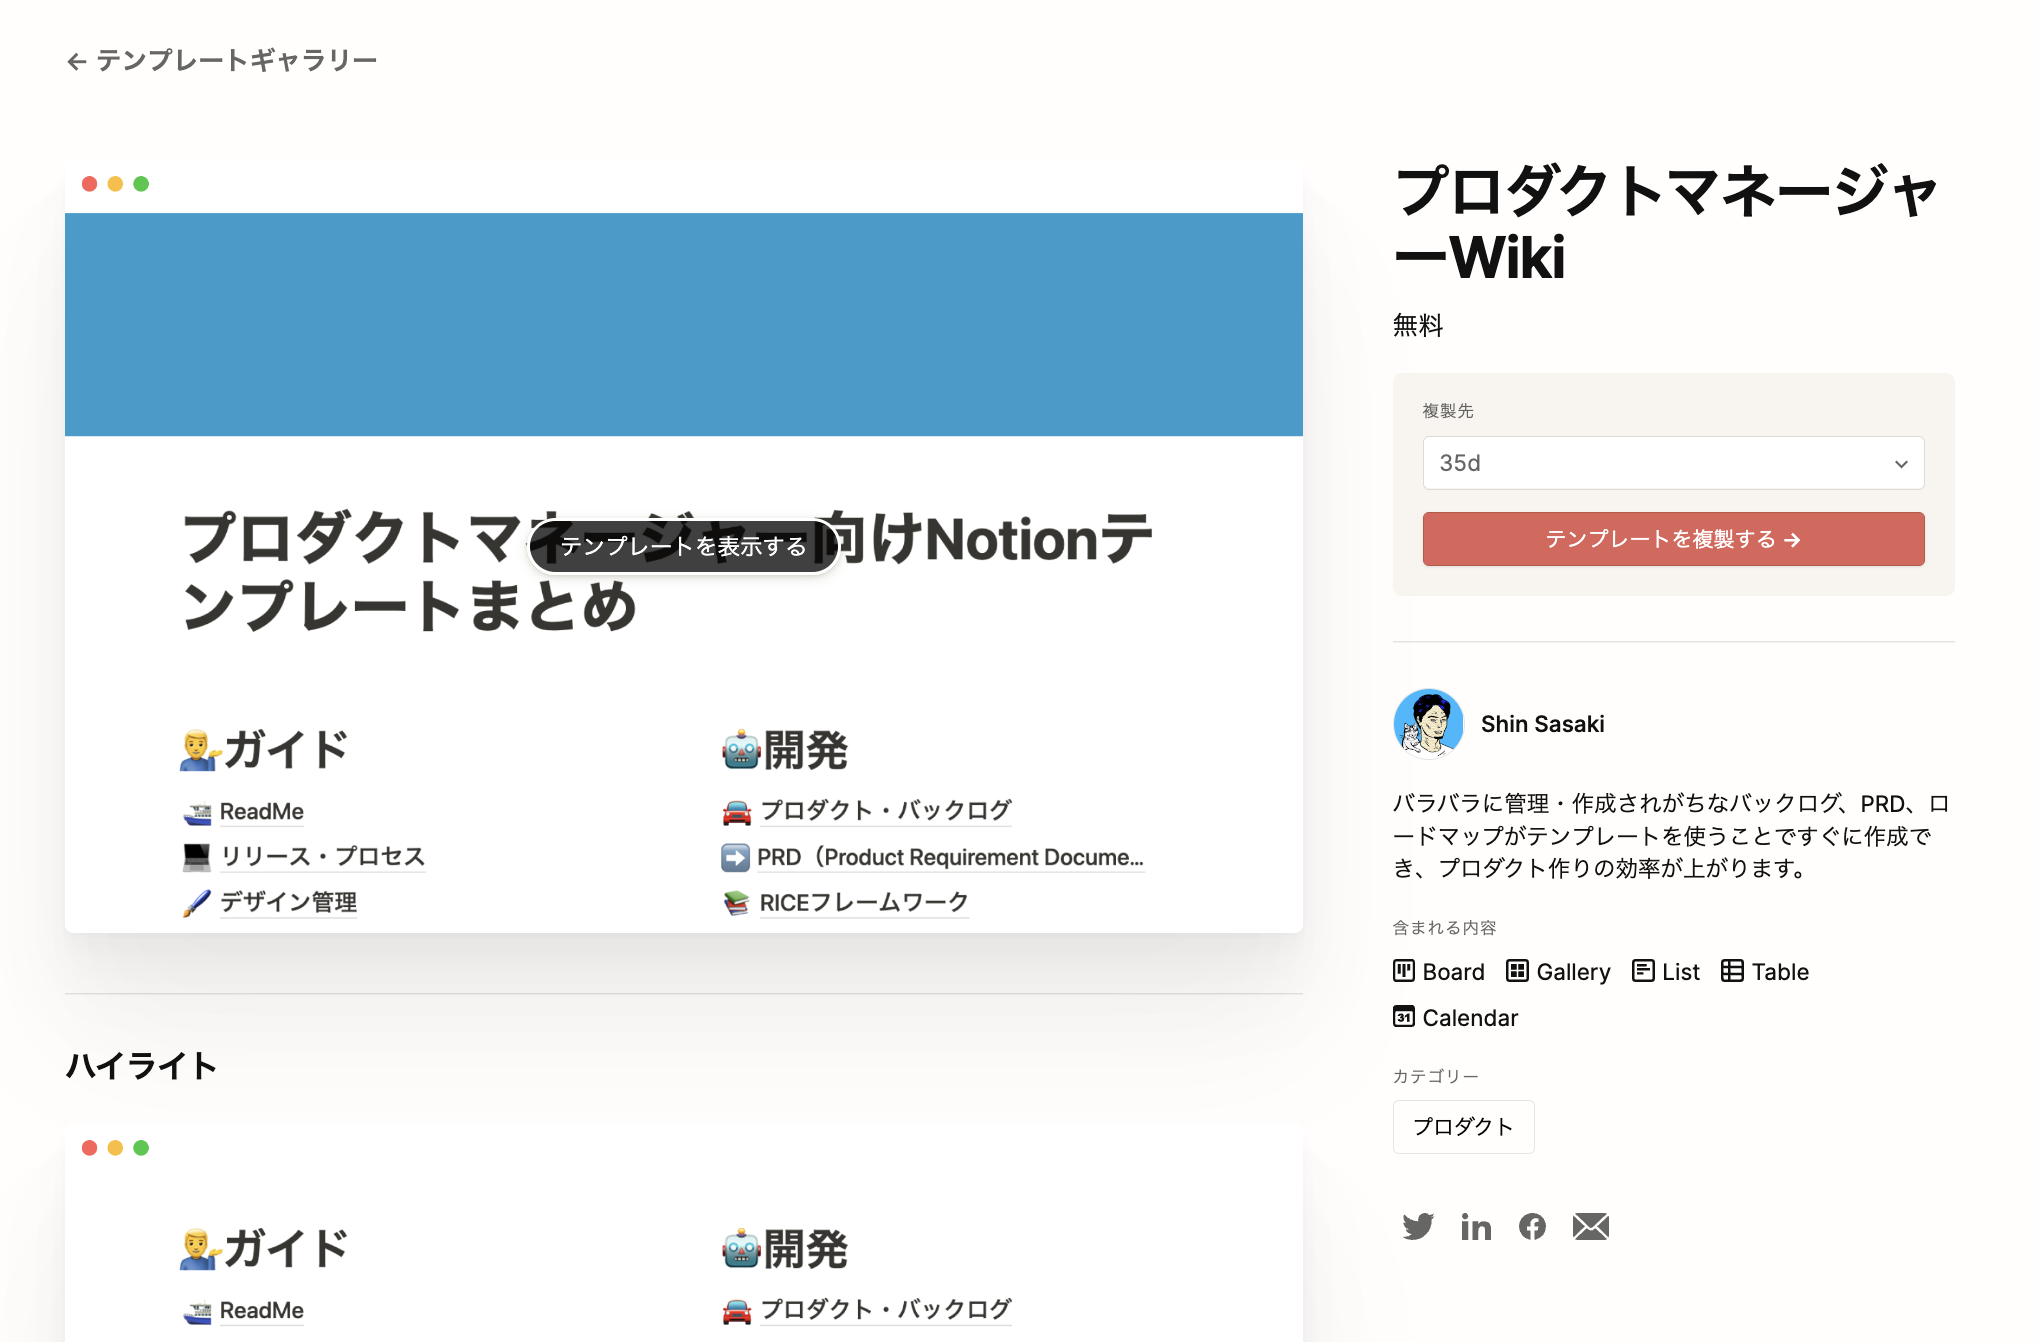 Shin Sasaki さんのプロダクトマネージャー Wiki を参考にさせていただきました